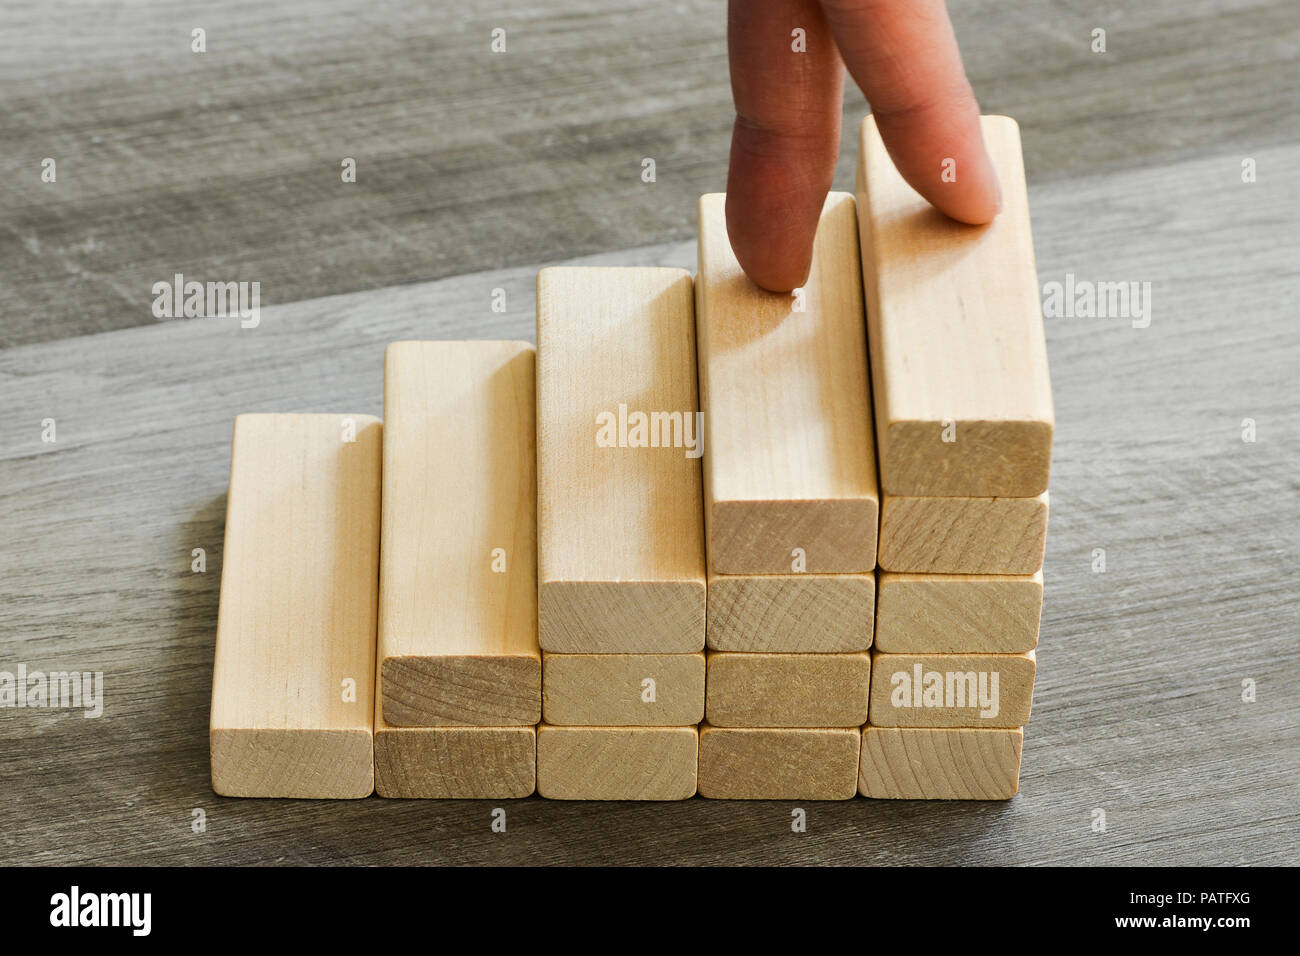 Les doigts jusqu'à l'escalade de haut sur l'escalier en bois - Concept de réussite Banque D'Images